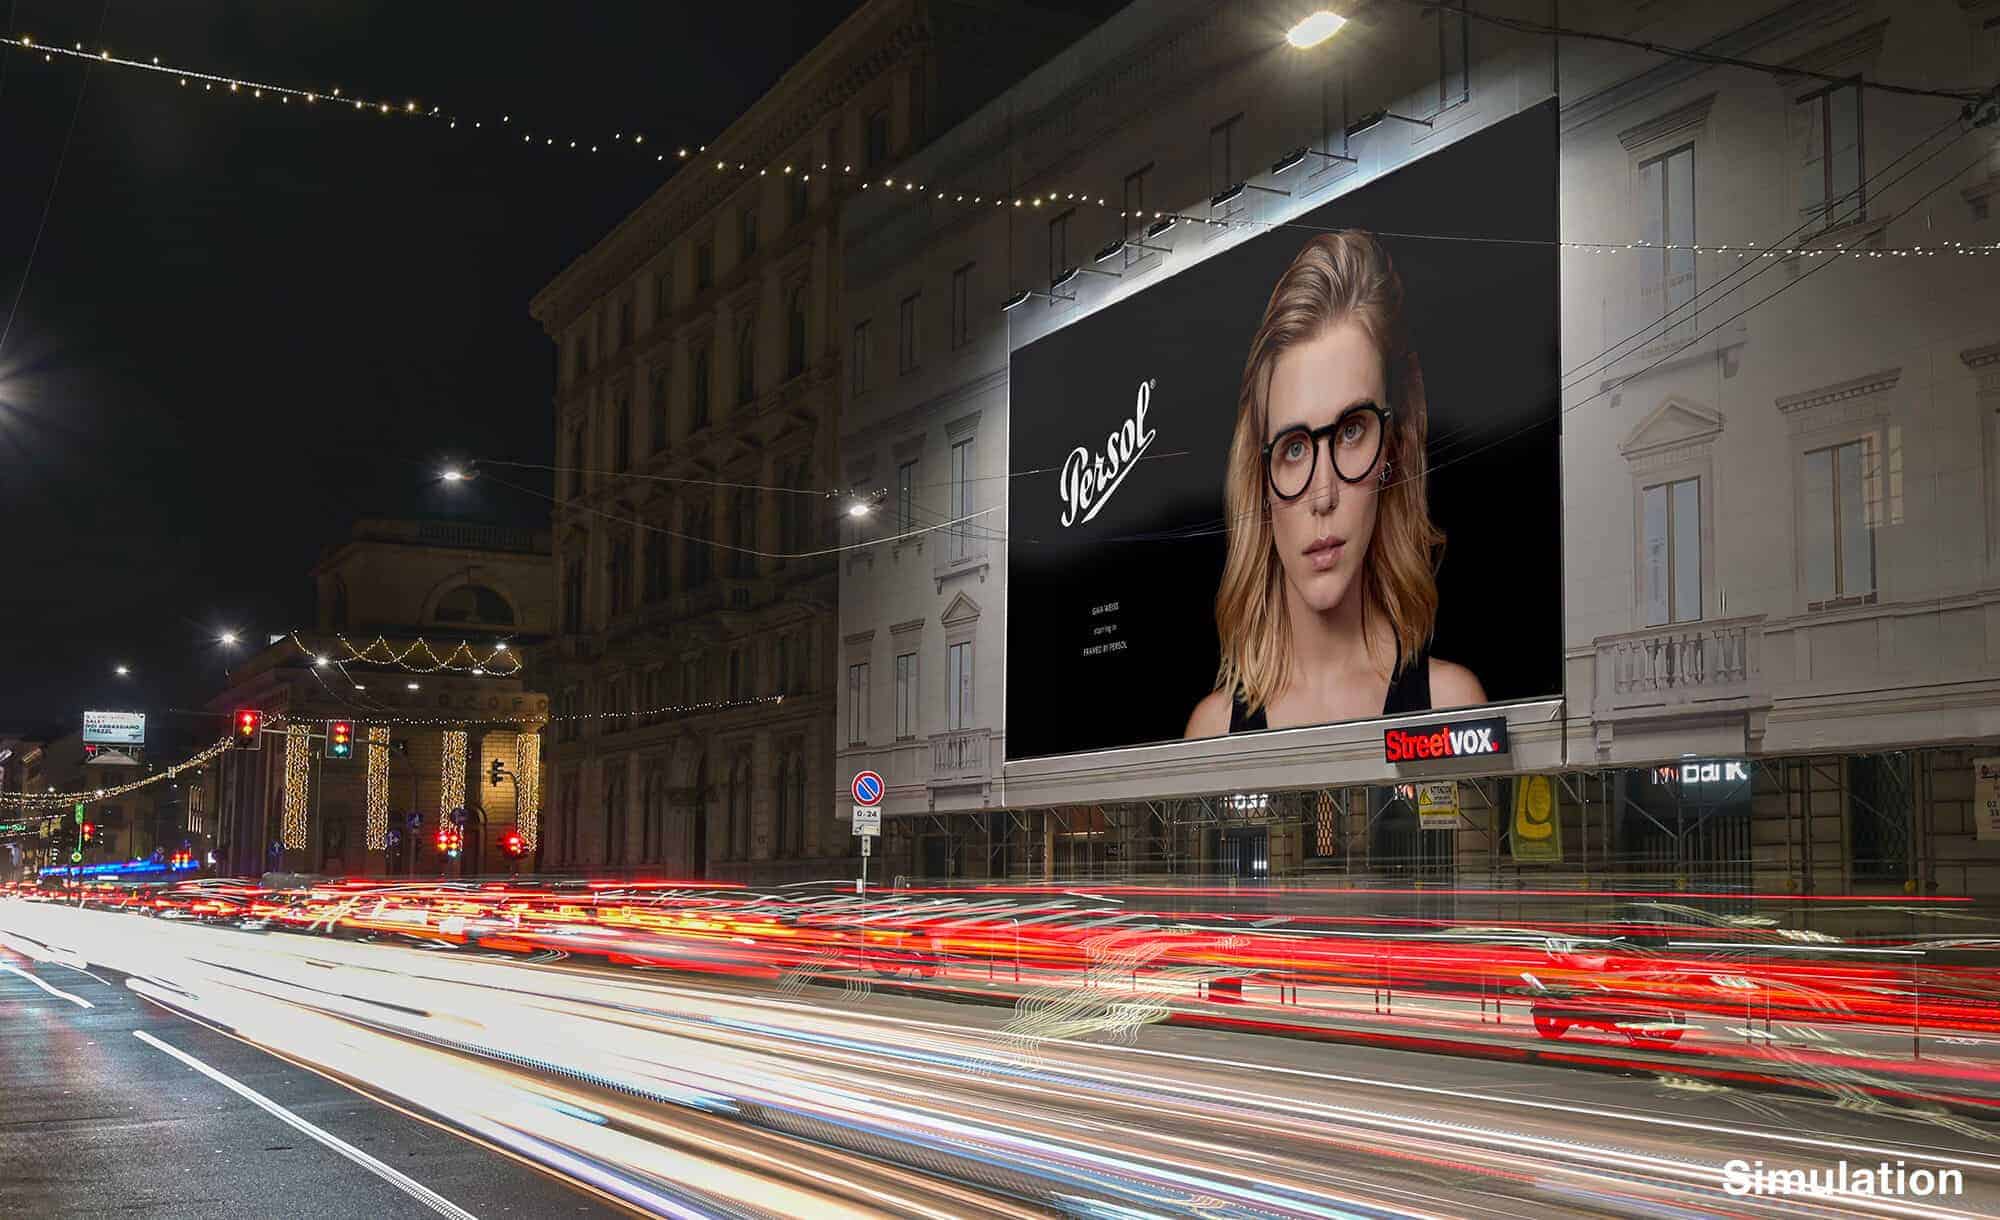 Maxi Affissione a Milano in Corso Venezia 54 con Persol (Fashion)